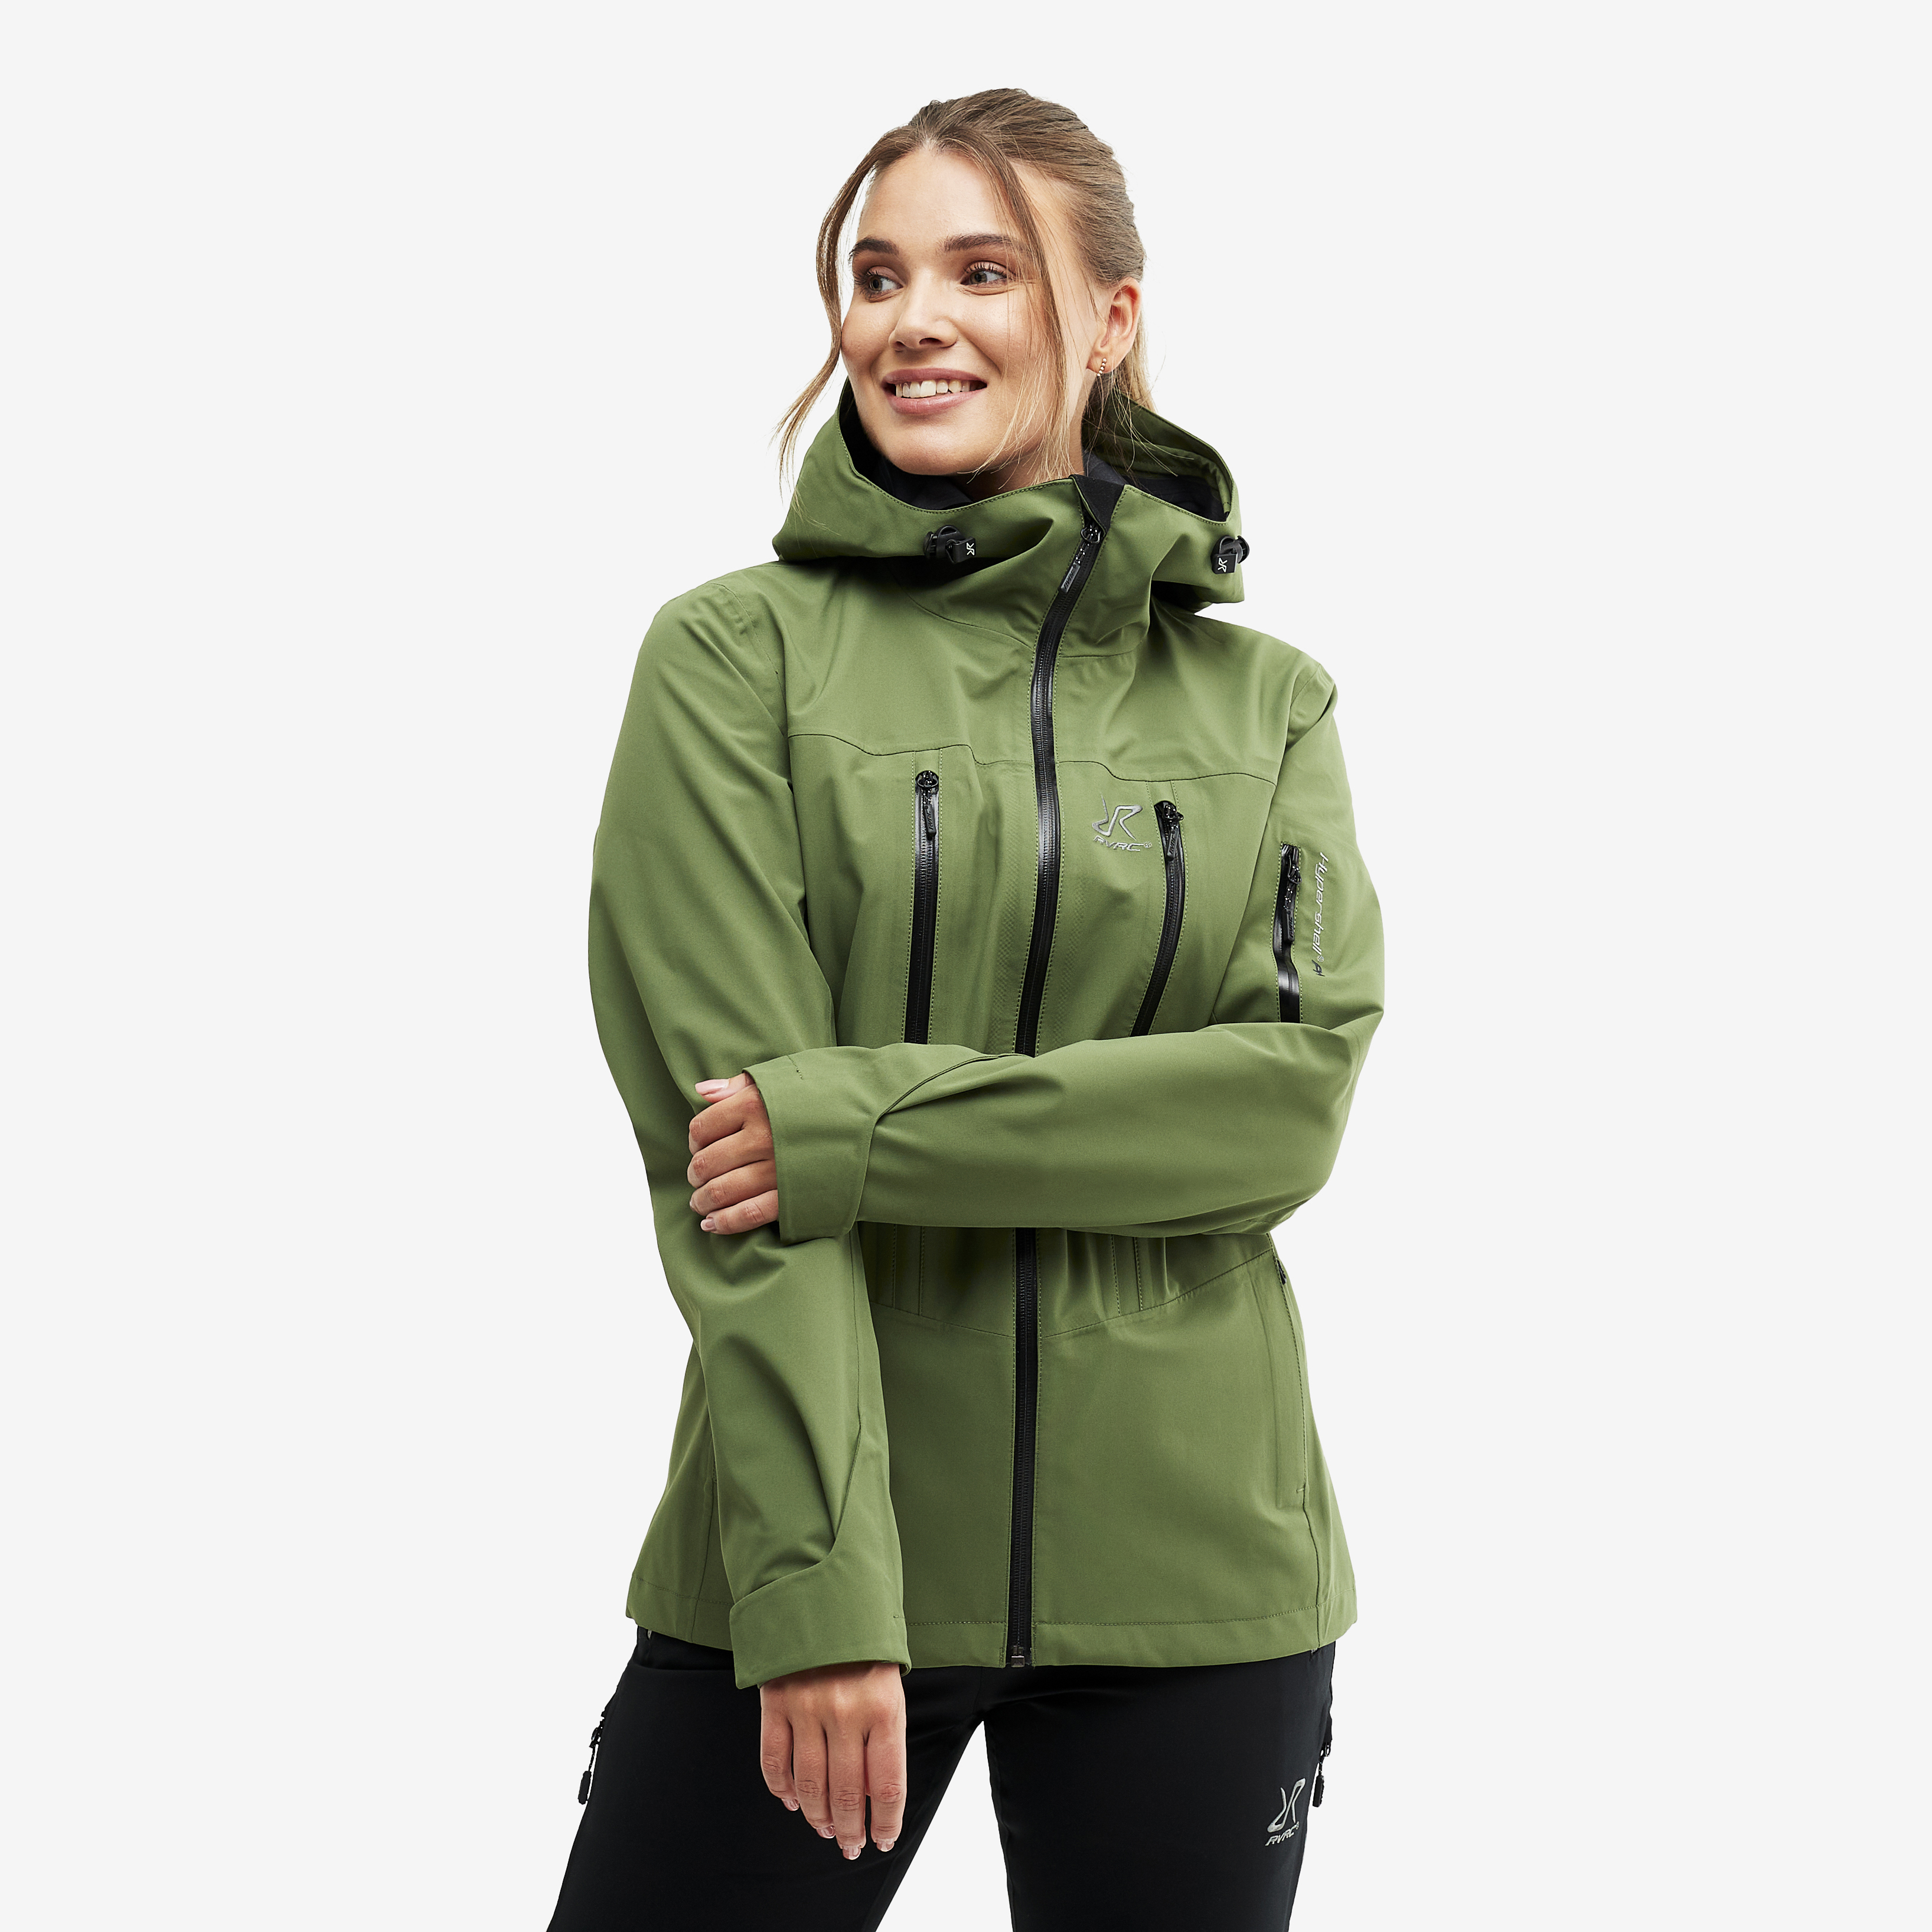 Whisper nepromokavá bunda pro ženy v zelené barvě